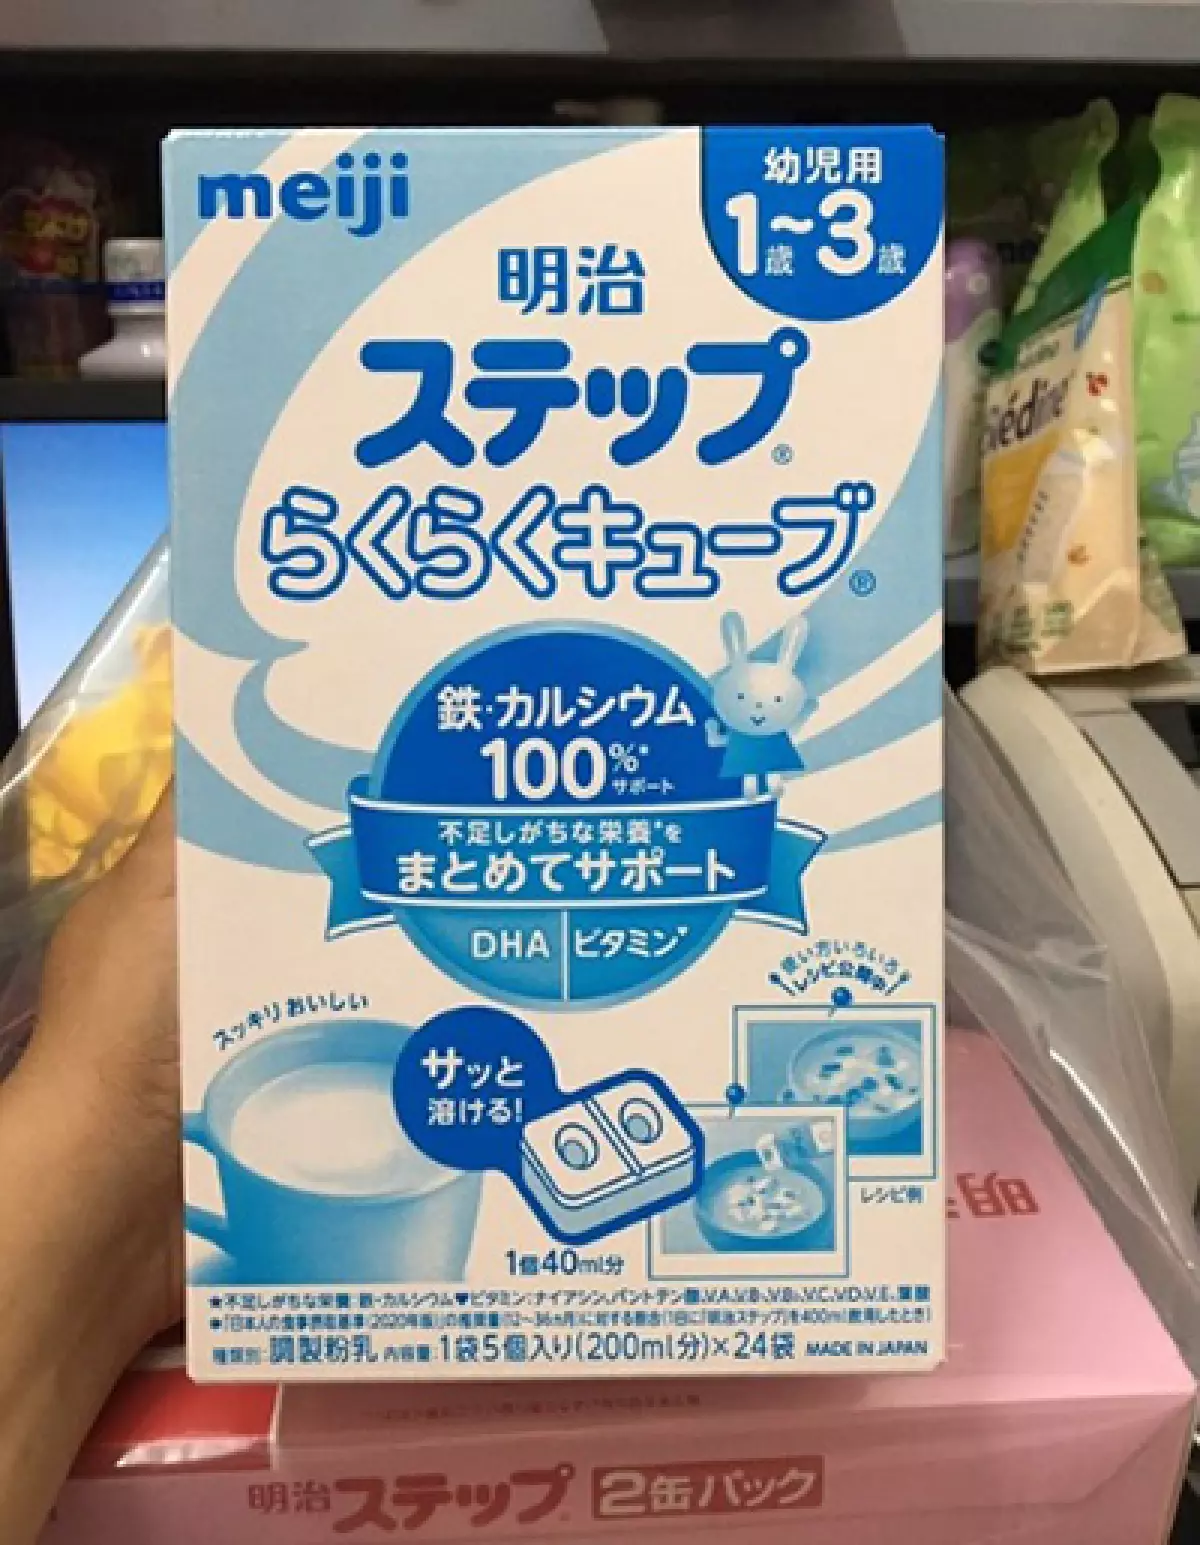 Ảnh sữa Meiji số 1 - 3 tuổi dạng thanh bao bì giấy bên ngoài